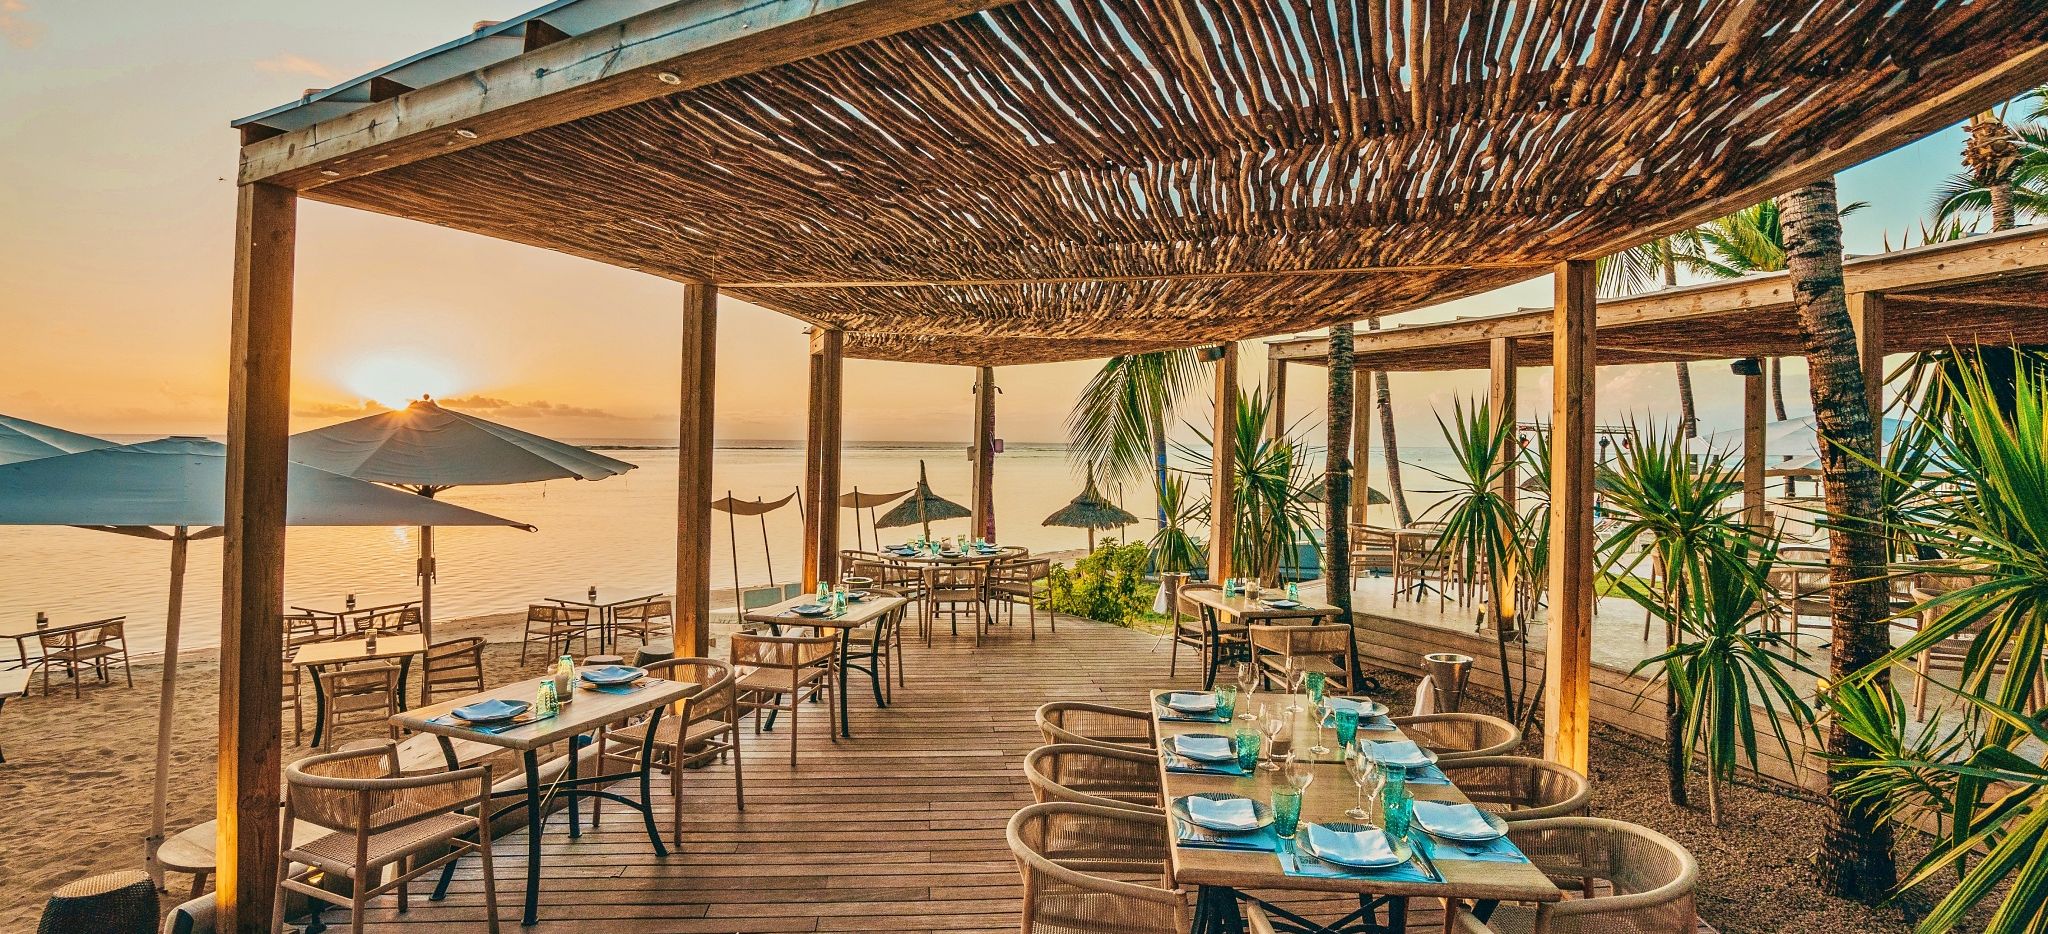 Restaurant am Strand, Sugar Beach, Mauritius